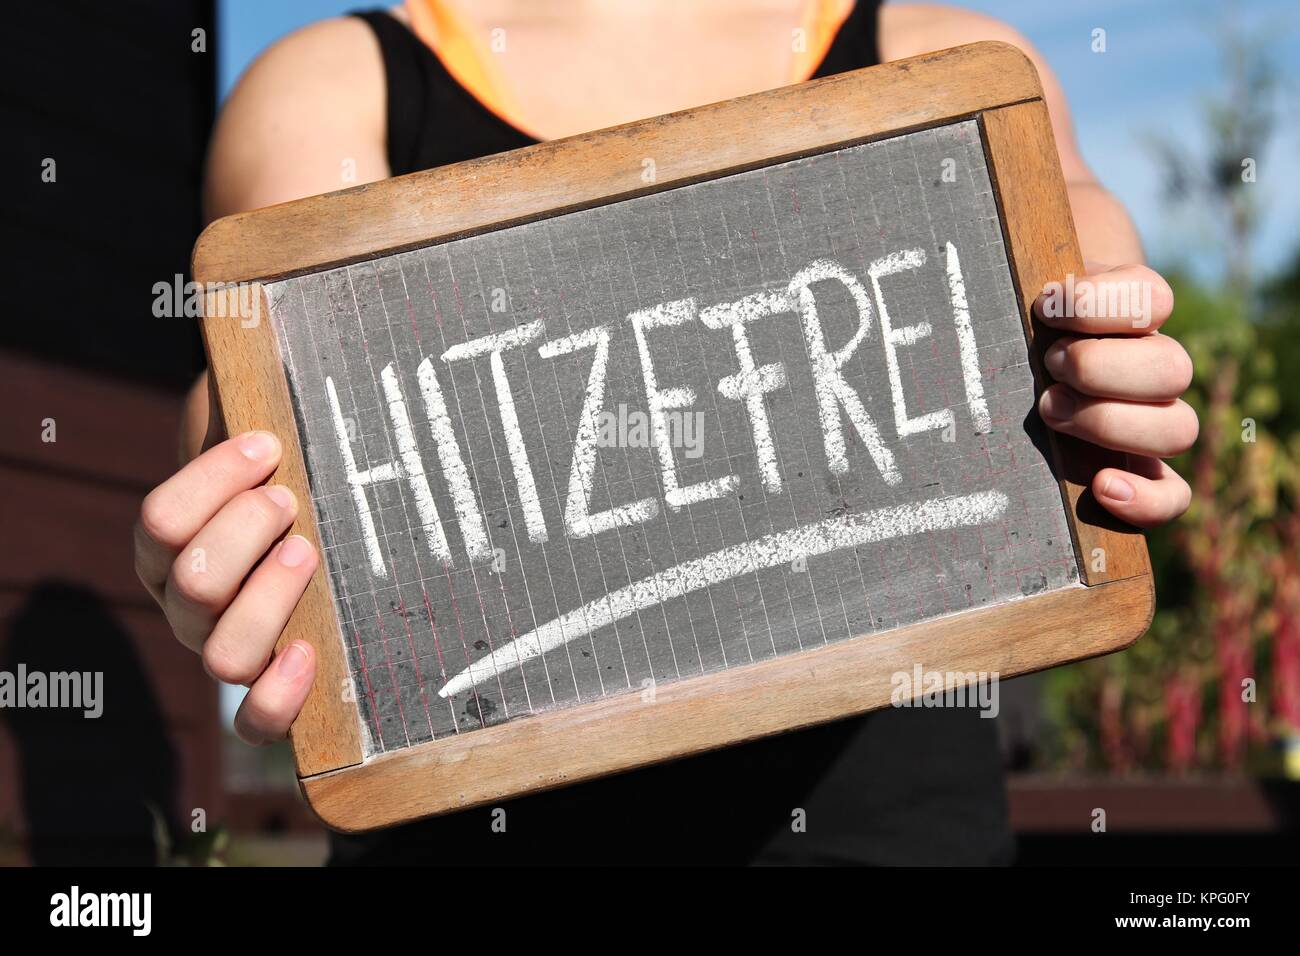 Hitzefrei German